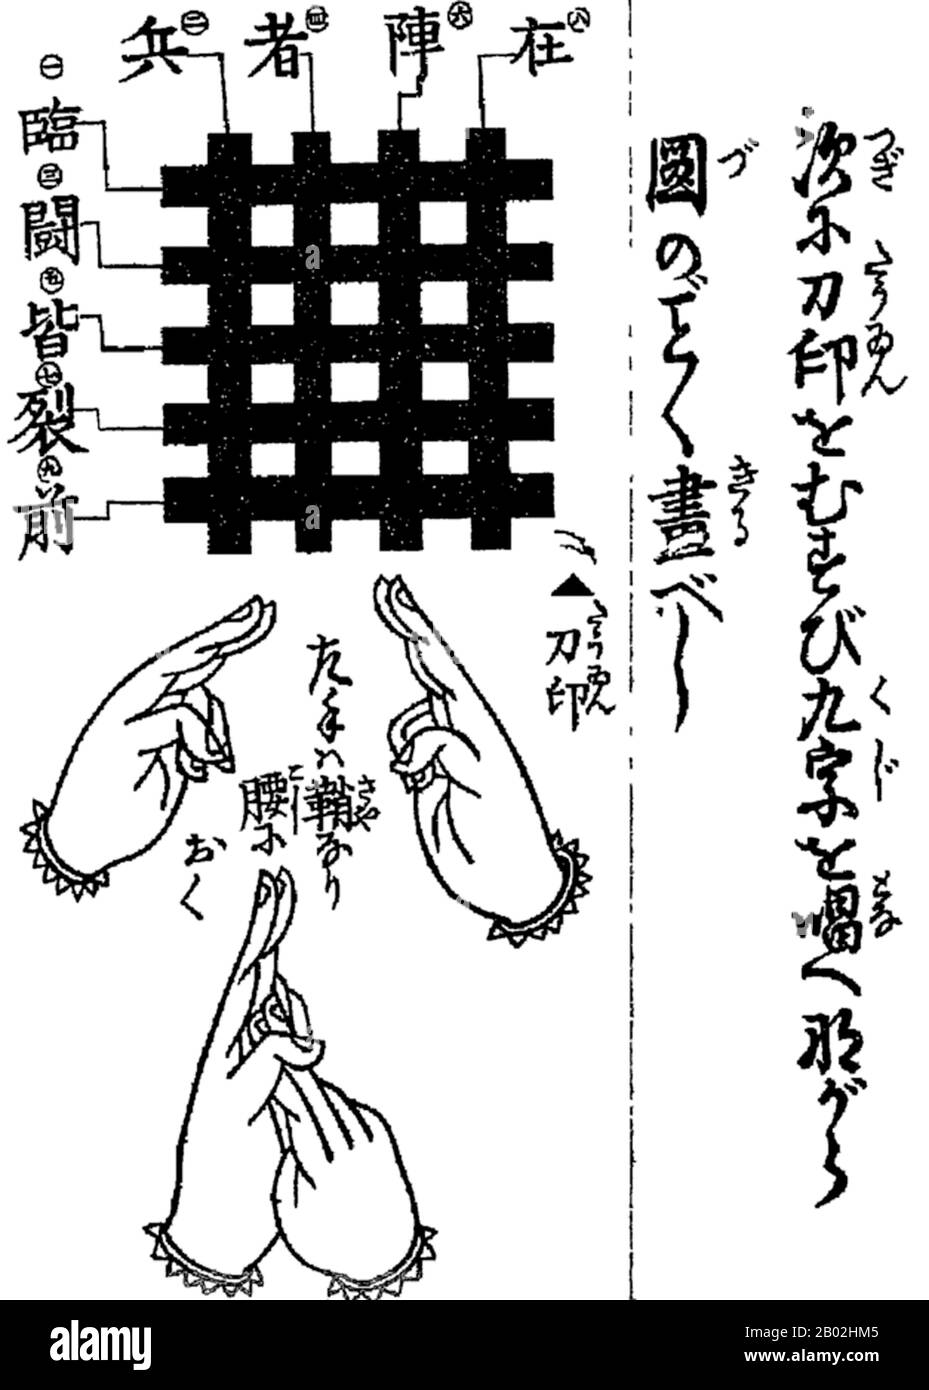 Kuji-kiri è una pratica esoterica che, quando eseguita con una serie di 'seals' di mano (kuji-in), è stato inteso per permettere a ninja di mettere in scena le imprese superumane. Il kuji ('nove caratteri') è un concetto che deriva dal Taoismo, dove era una stringa di nove parole usate in fascino e incantesimi. Gli effetti previsti vanno dalla concentrazione fisica e mentale, a affermazioni più incredibili sul rendering di un avversario immobile, o anche il casting di incantesimi magici. Queste leggende sono state catturate nella cultura popolare, che ha interpretato il kuji-kiri come un precursore di atti magici. Foto Stock